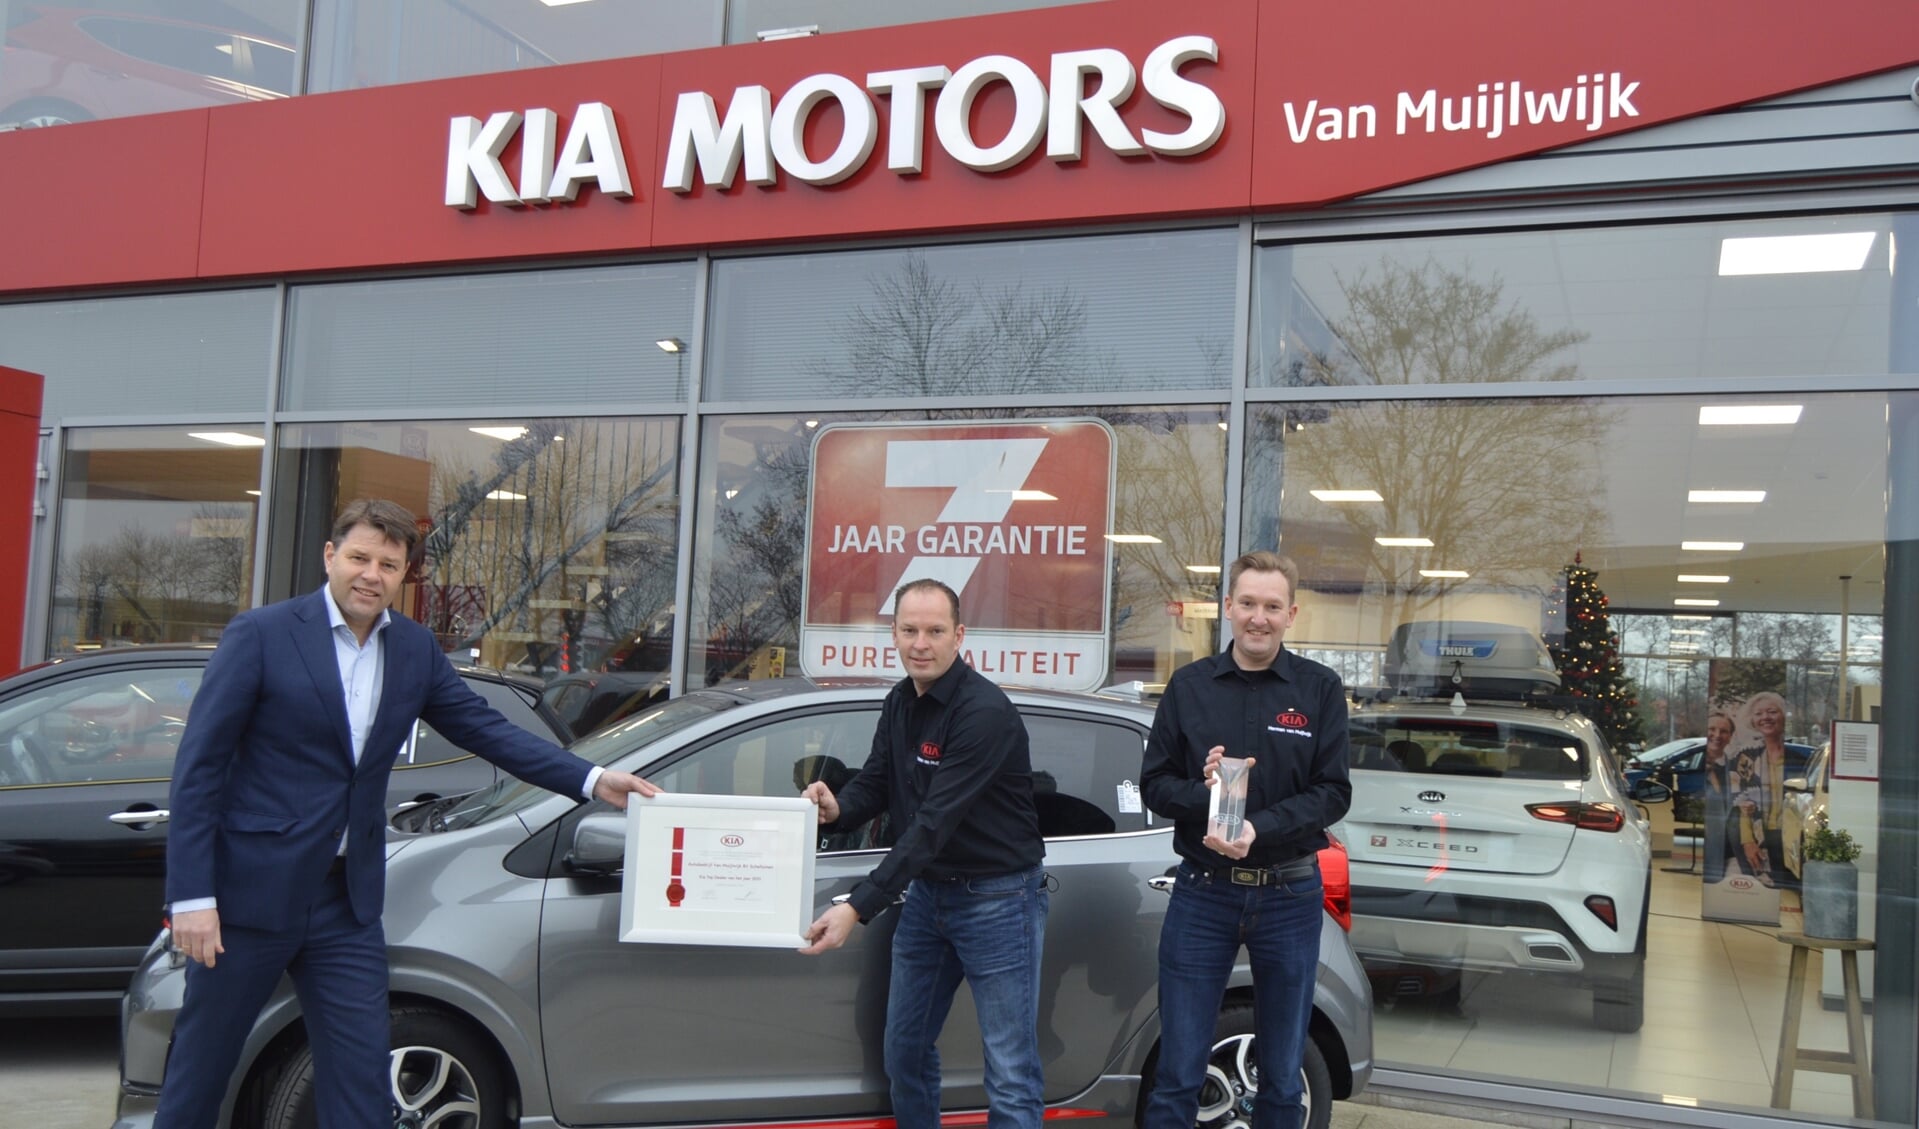 • Léan Verstoep (Kia Motors Nederland) met rechts naast hem Pieter en Herman van Muijlwijk (Autobedrijf van Muijlwijk).